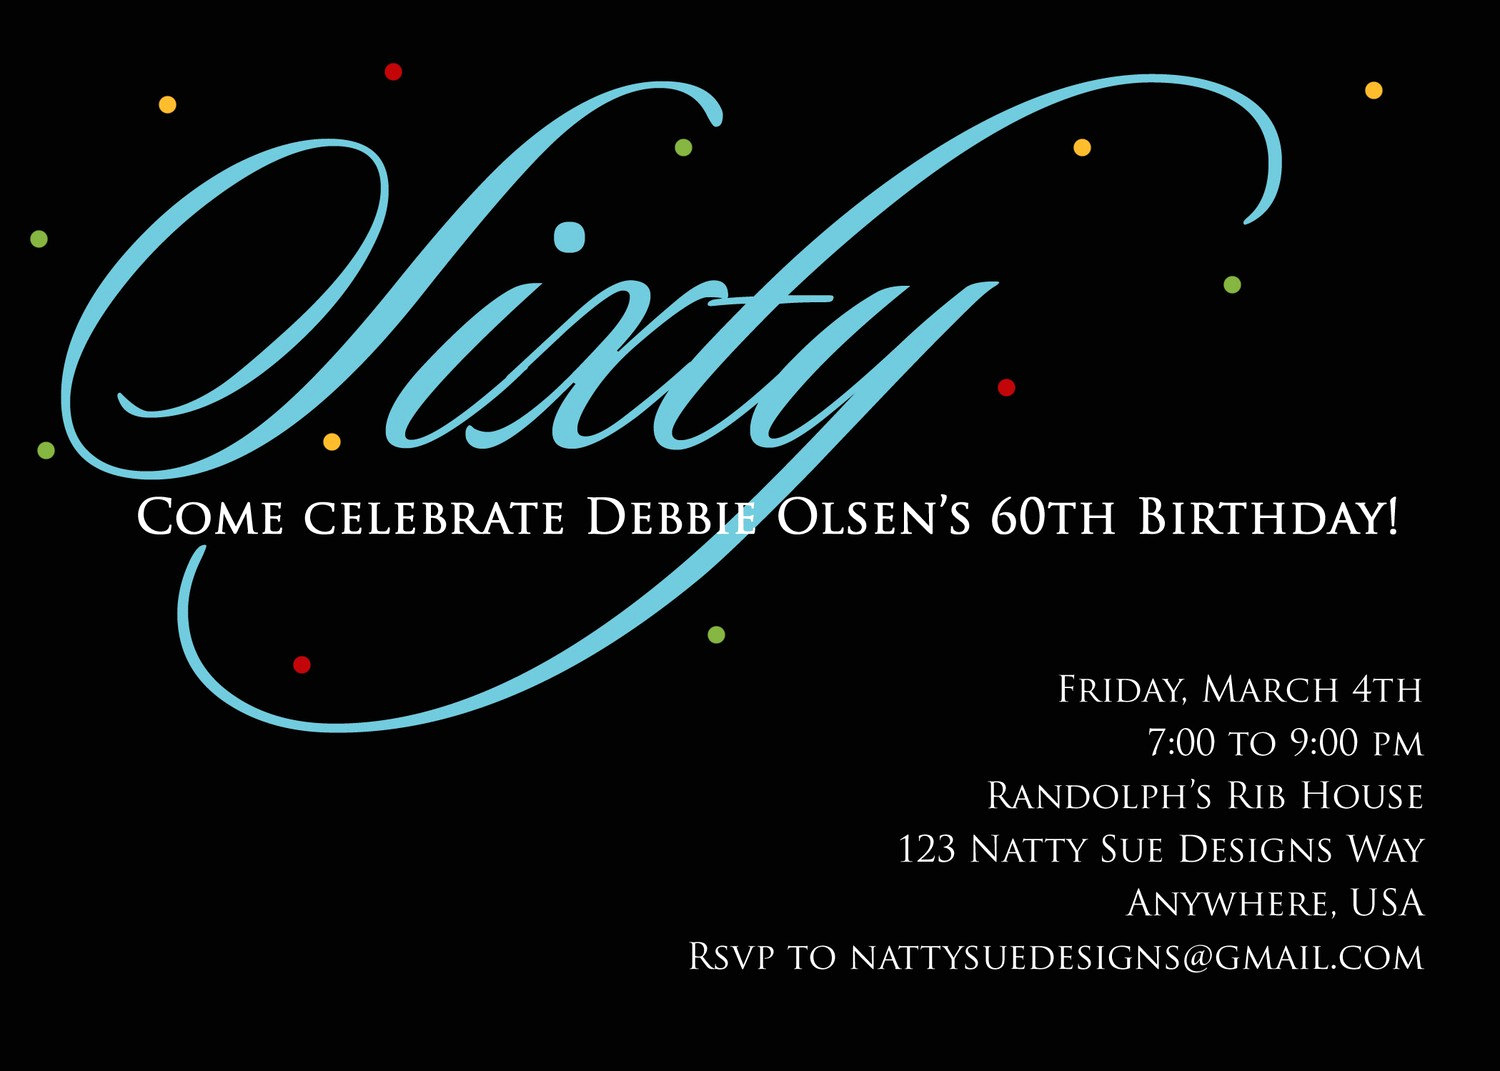 60th Birthday Invitations Template Elegant Custom 60th Birthday Invitation by Nattysuedesigns1 On Etsy